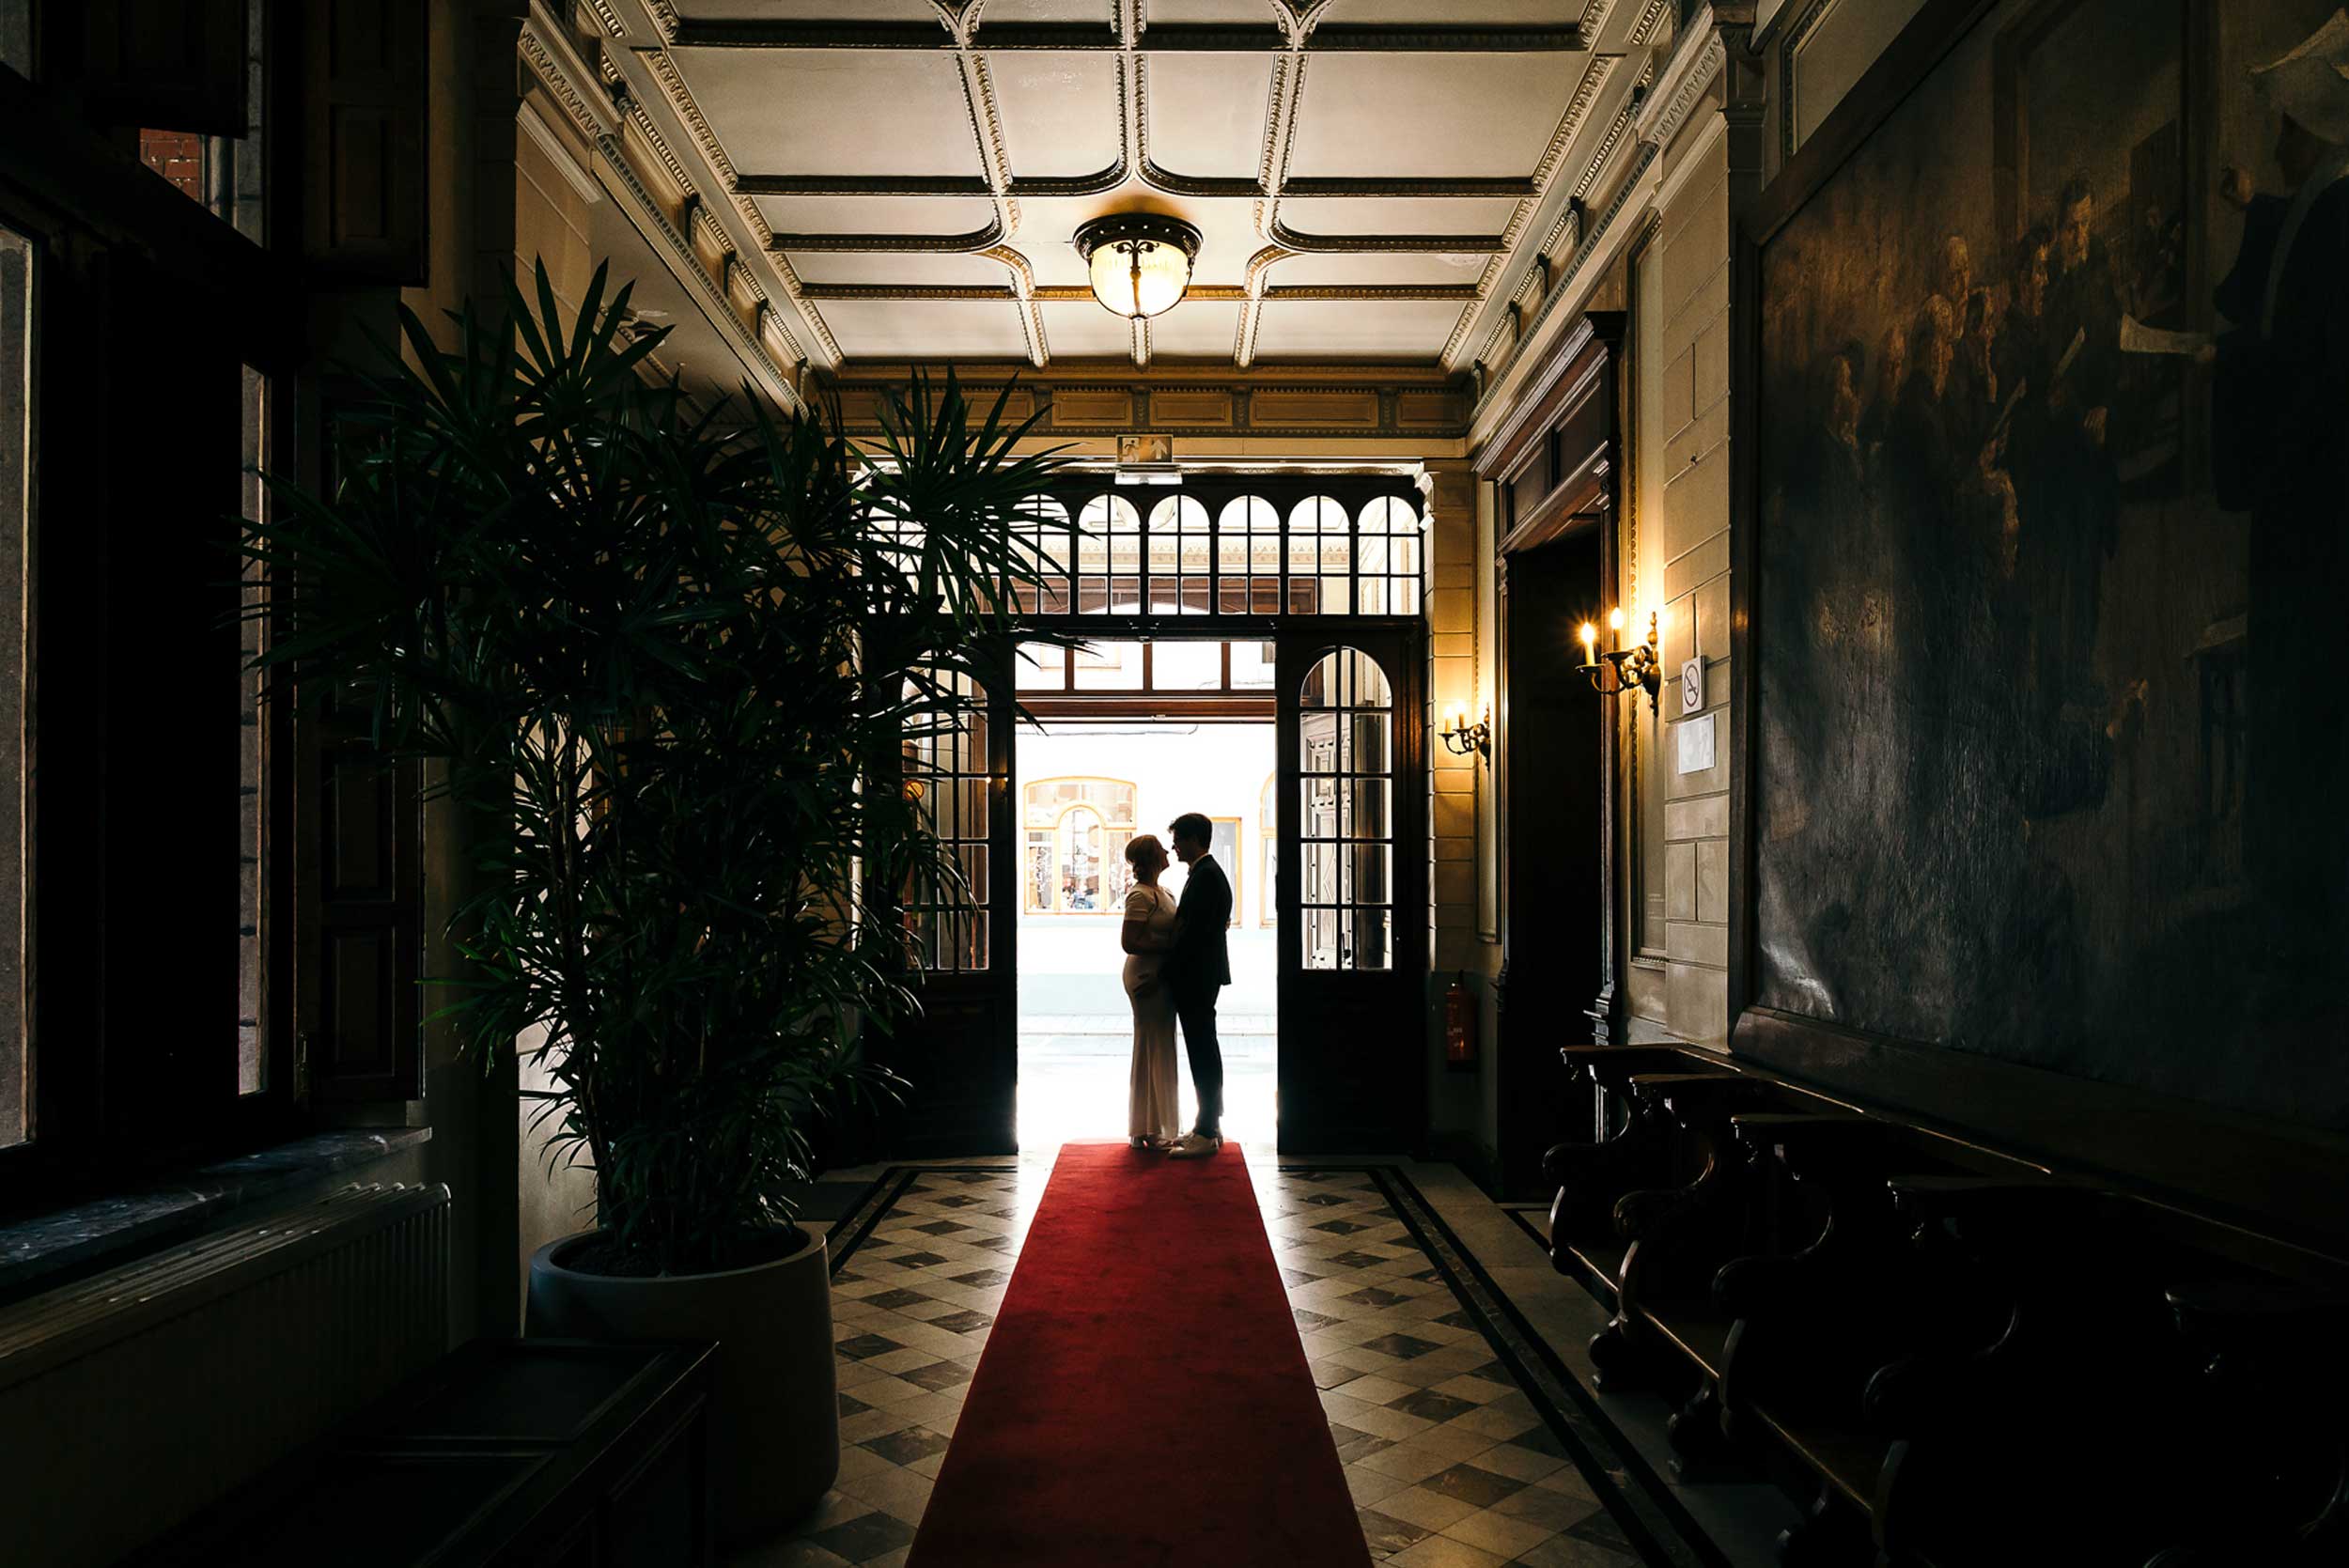 Prachtige silhouetfoto van bruidspaar, gefotografeerd van binnenuit naar buiten; strak retro interieur vormt een stijlvolle achtergrond.